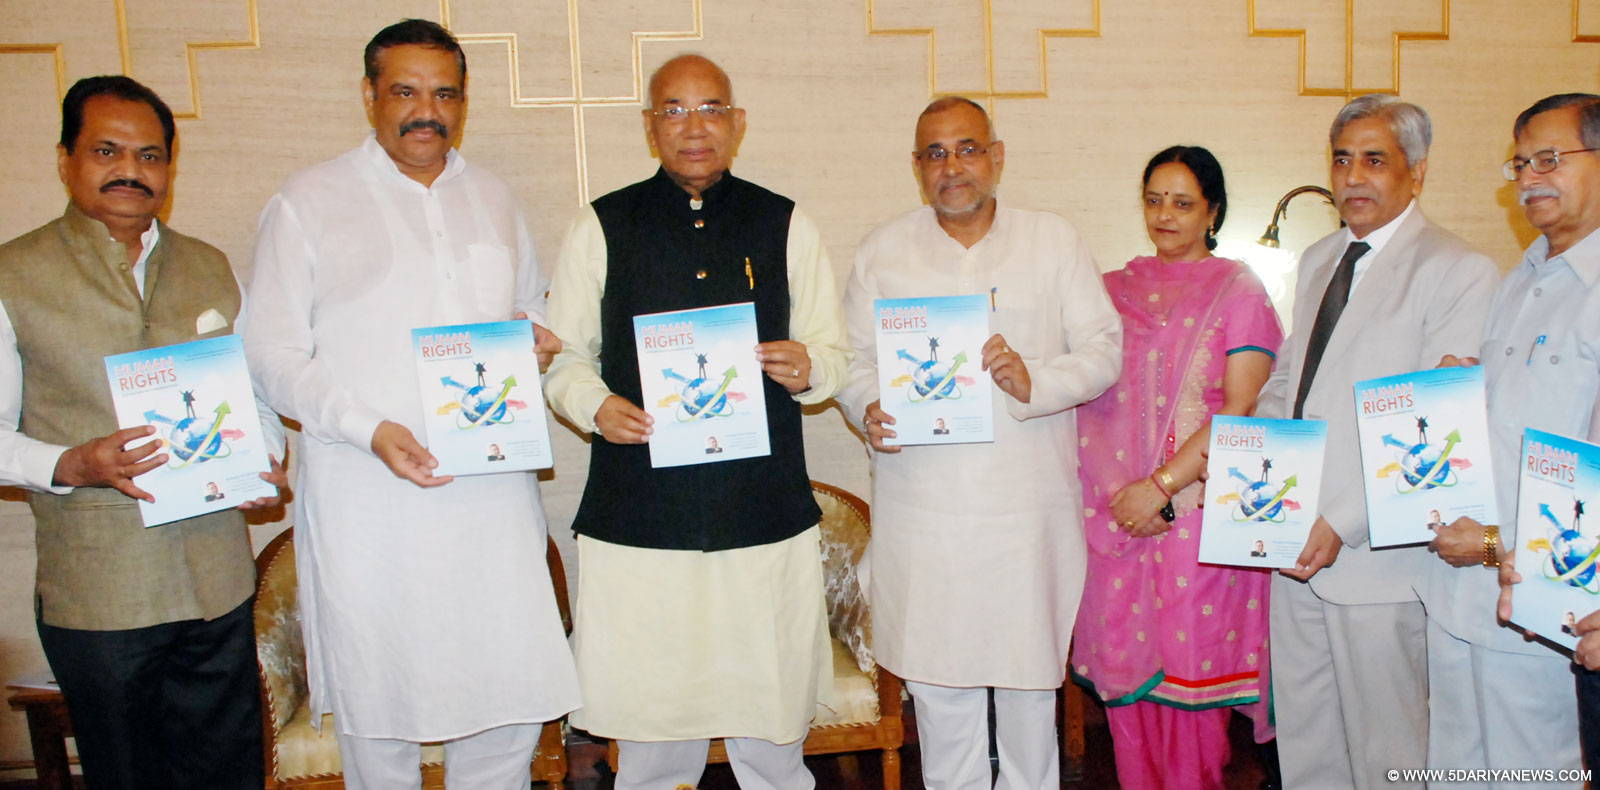 प्रो. कप्तान सिंह सोलंकी ने सांसद अविनाश राय खन्ना की पुस्तक ‘ह्यूमैन राइट्स’ का लोकार्पण किया